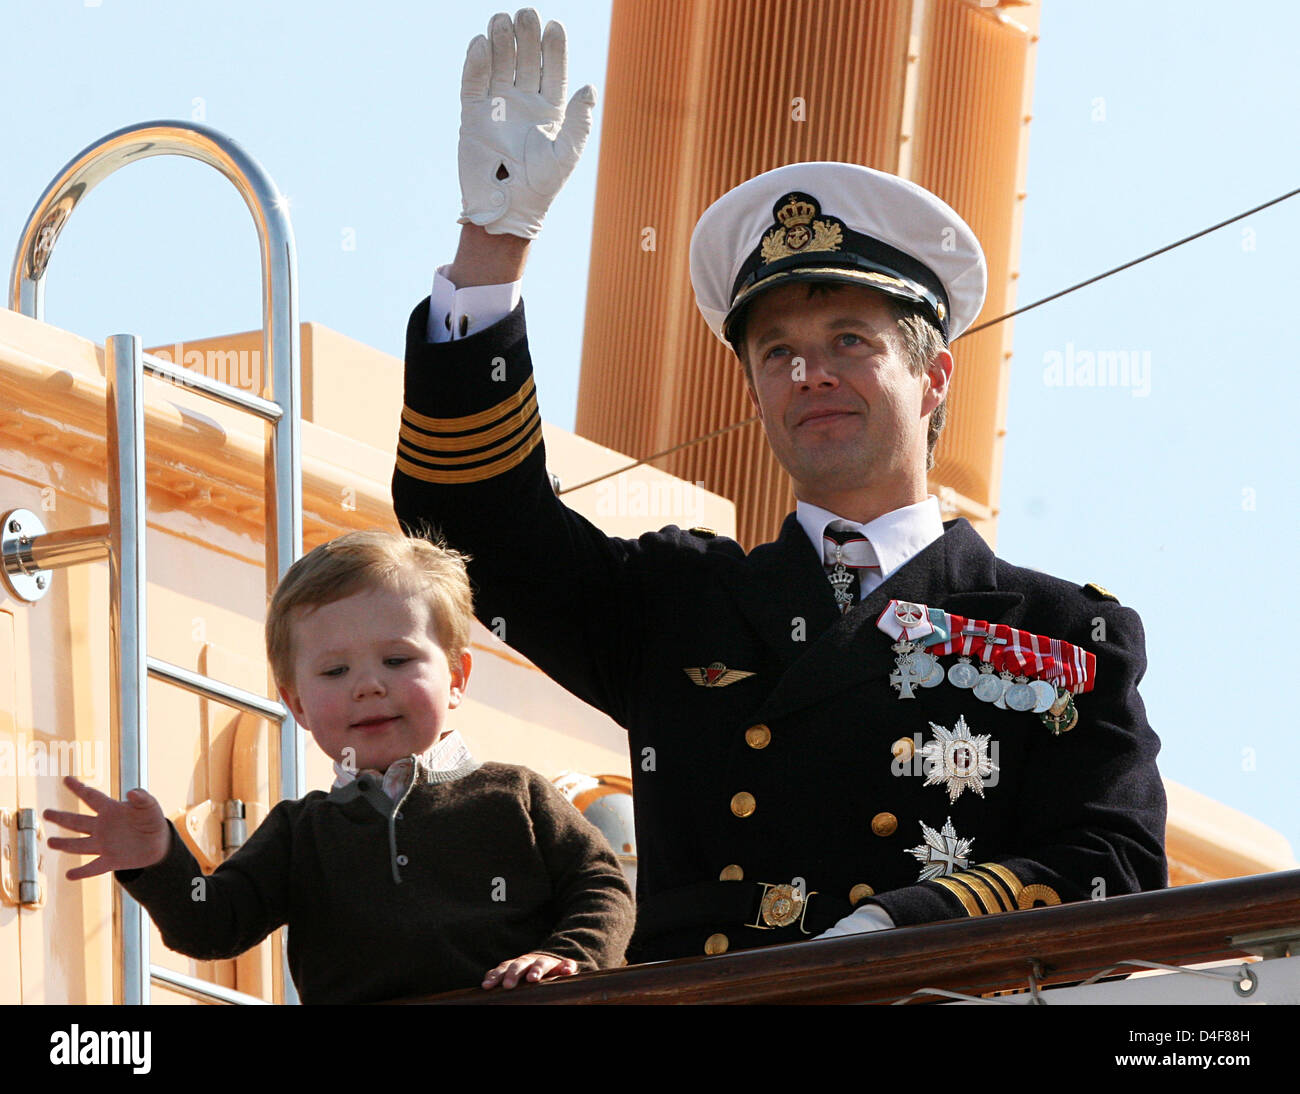 Le Prince héritier Frederik et son fils Prince Christian arrivent à Svendborg, Danemark, 18 juin 2008. La famille royale est sur une croisière d'été de trois jours à travers le Danemark du Sud sur son yacht "annebrog'. Photo : Albert Nieboer (Pays-Bas) Banque D'Images